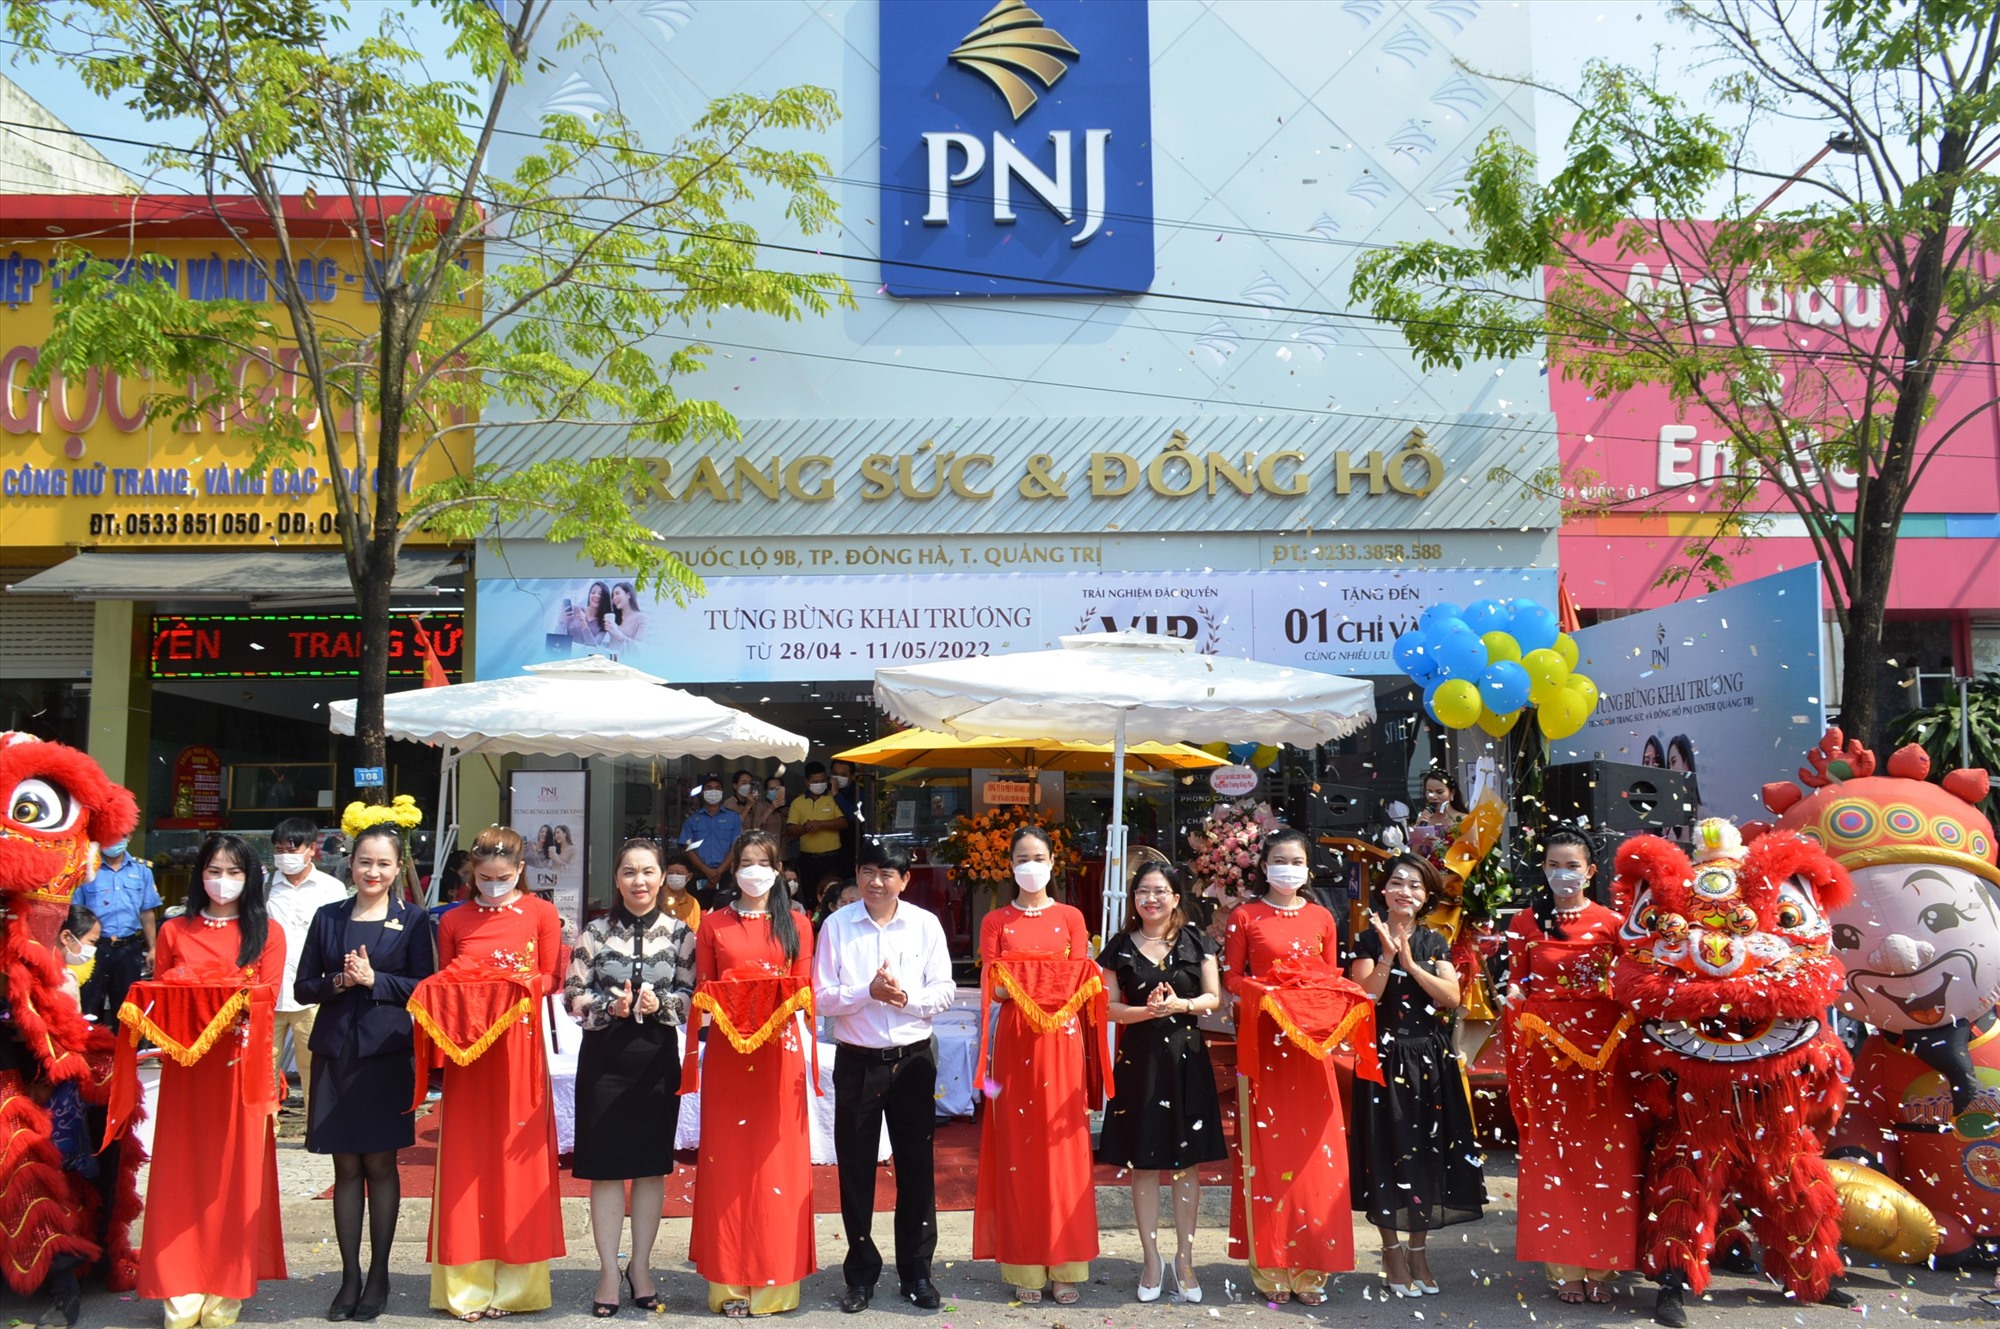 PNJ Center Quảng Trị tổ chức khai trương tại địa chỉ số 86 Quốc lộ 9B, Phường 1, TP. Đông Hà - Ảnh: ĐV